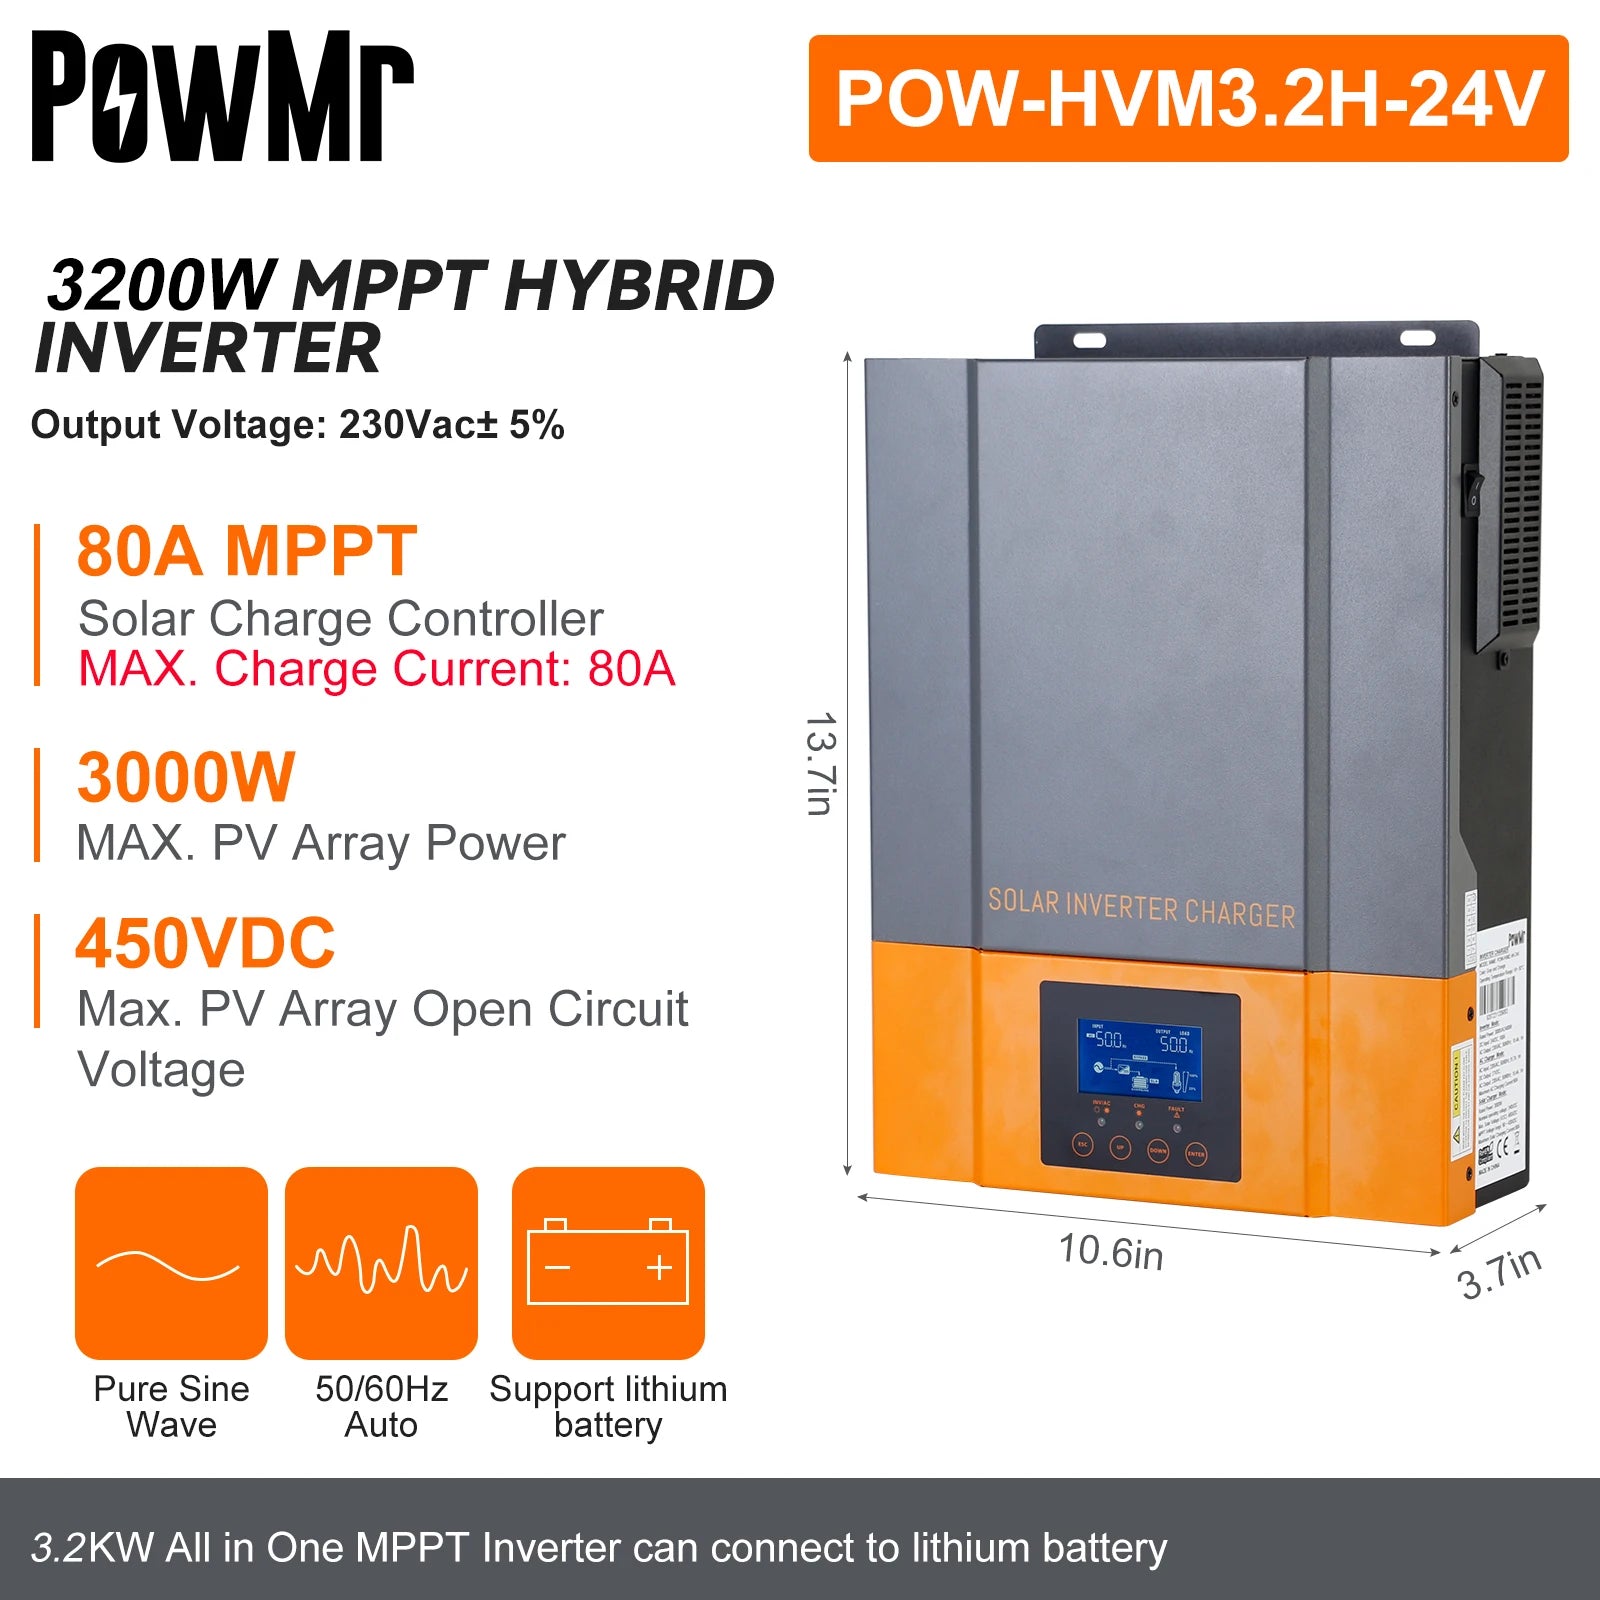 PowMr 1.5KW 2.4KW 3.2KW Hybrid Solar Inverter, PowMr POW-HVM3.2H-24V hybrid inverter for charging lithium batteries with MPPT technology.